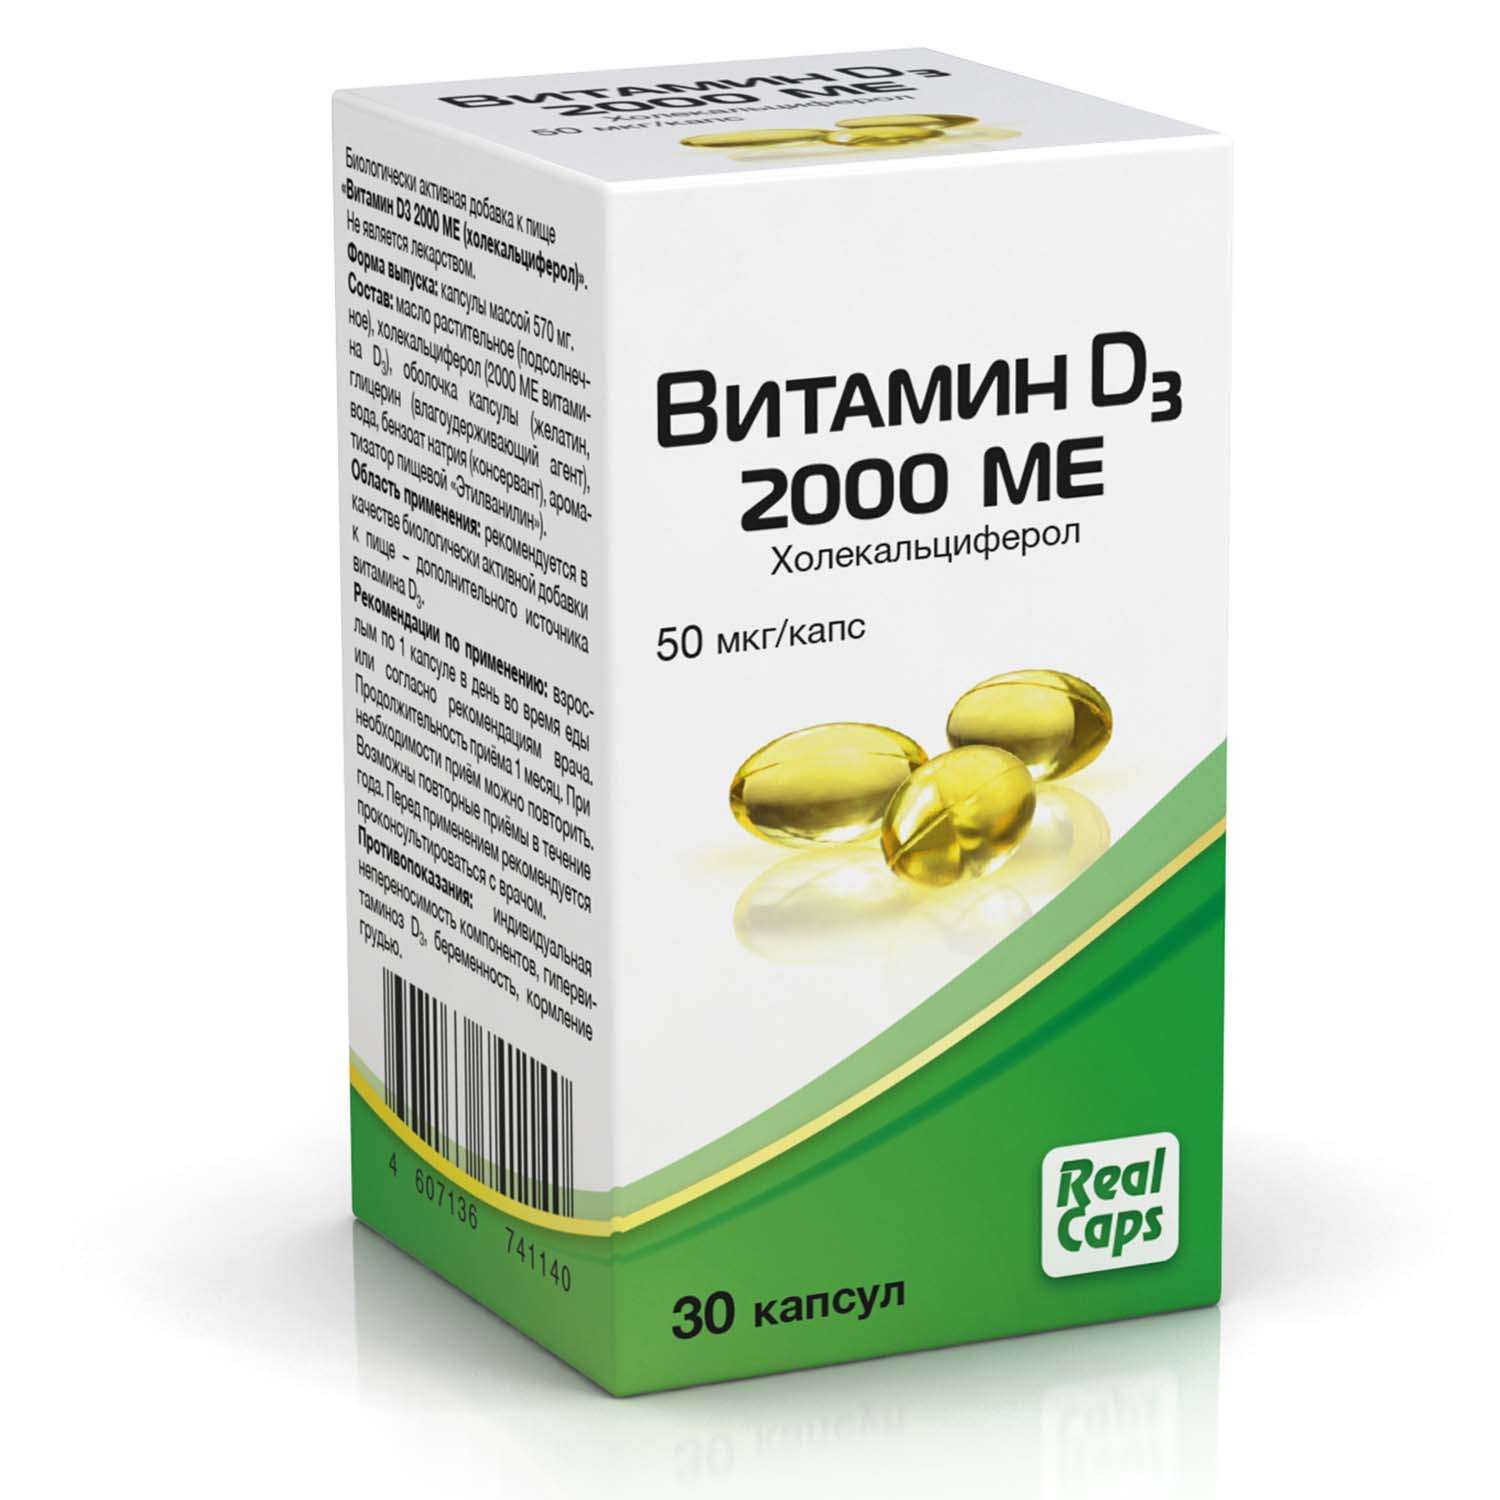 Биологически активная добавка Real Caps Витамин D3 2000ME 30капсул - фото 1